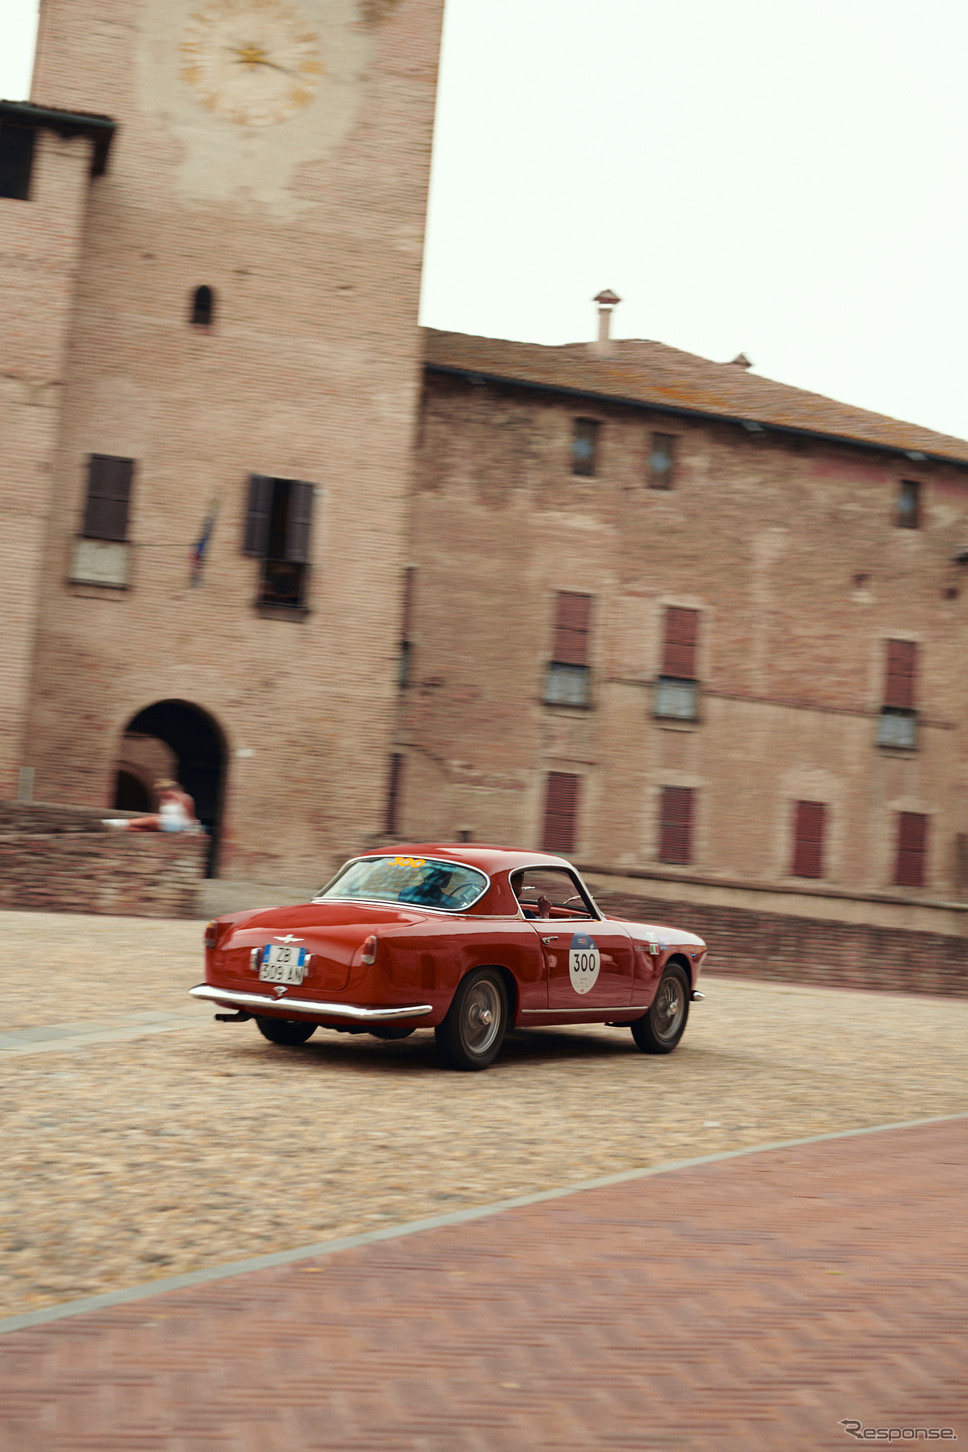 「ミッレミリア2021」に参加したアルファロメオ《photo by Alfa Romeo》